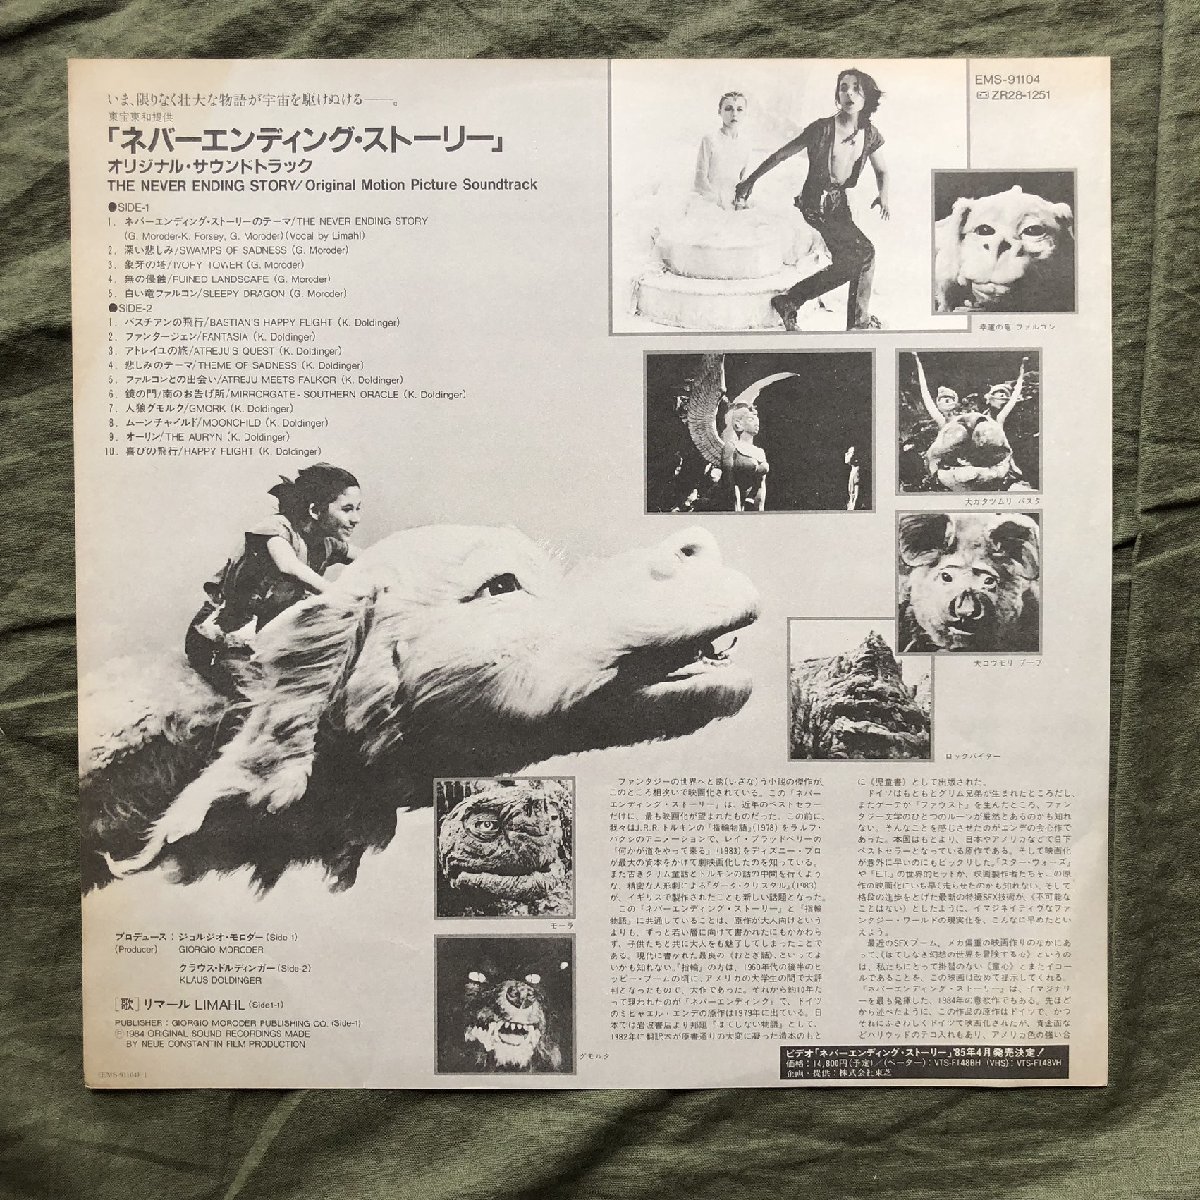  прекрасный запись хорошо jacket 1984 год записано в Японии саундтрек LP запись ne балка *en DIN g* -тактный - Lee The Never Ending Story с лентой li Maar, Limahl